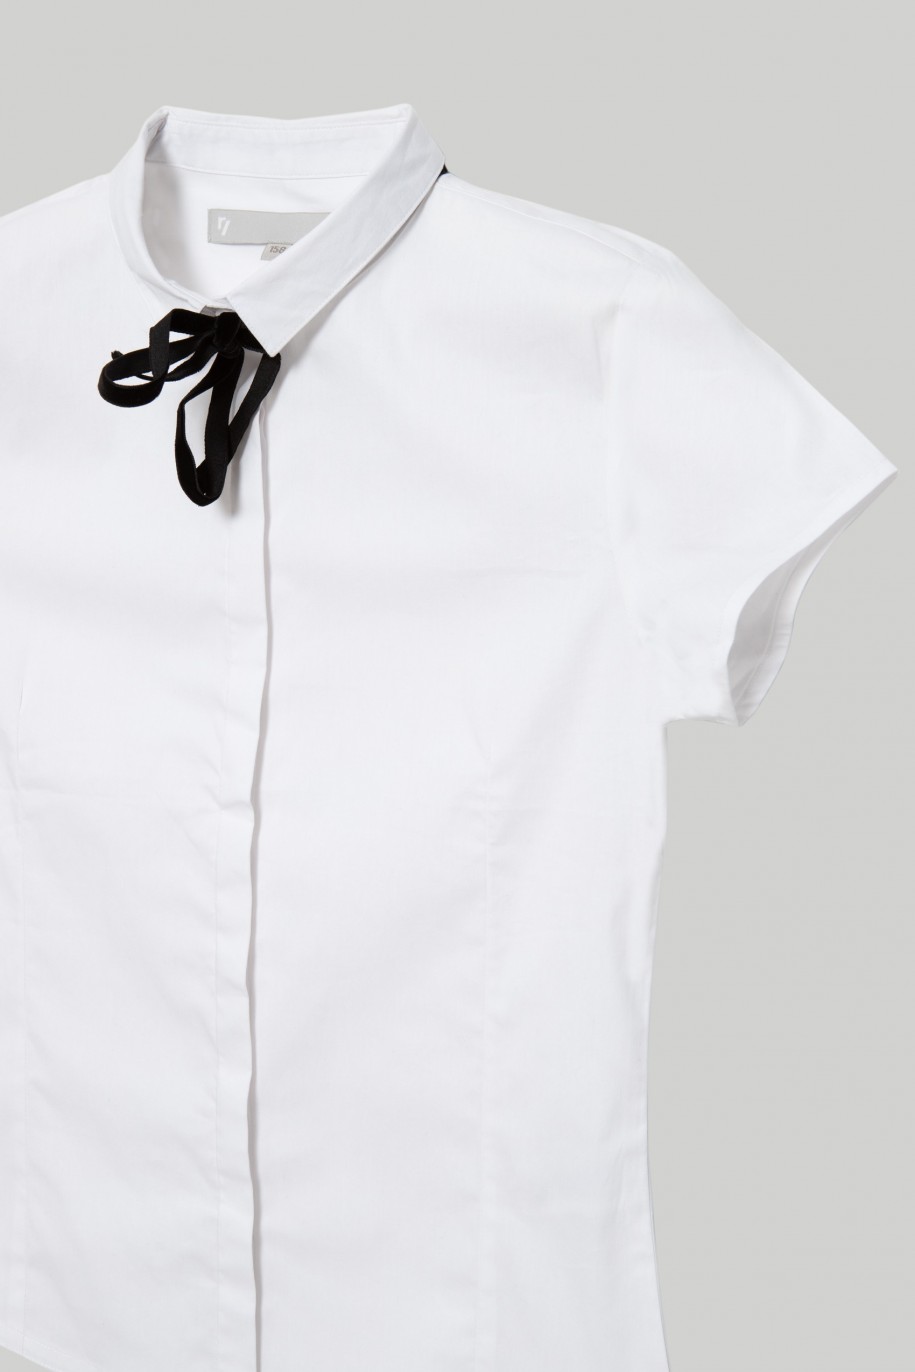 Biała koszula z krótkim rękawem i wstążką przy kołnierzyku dla dziewczyny - 28207